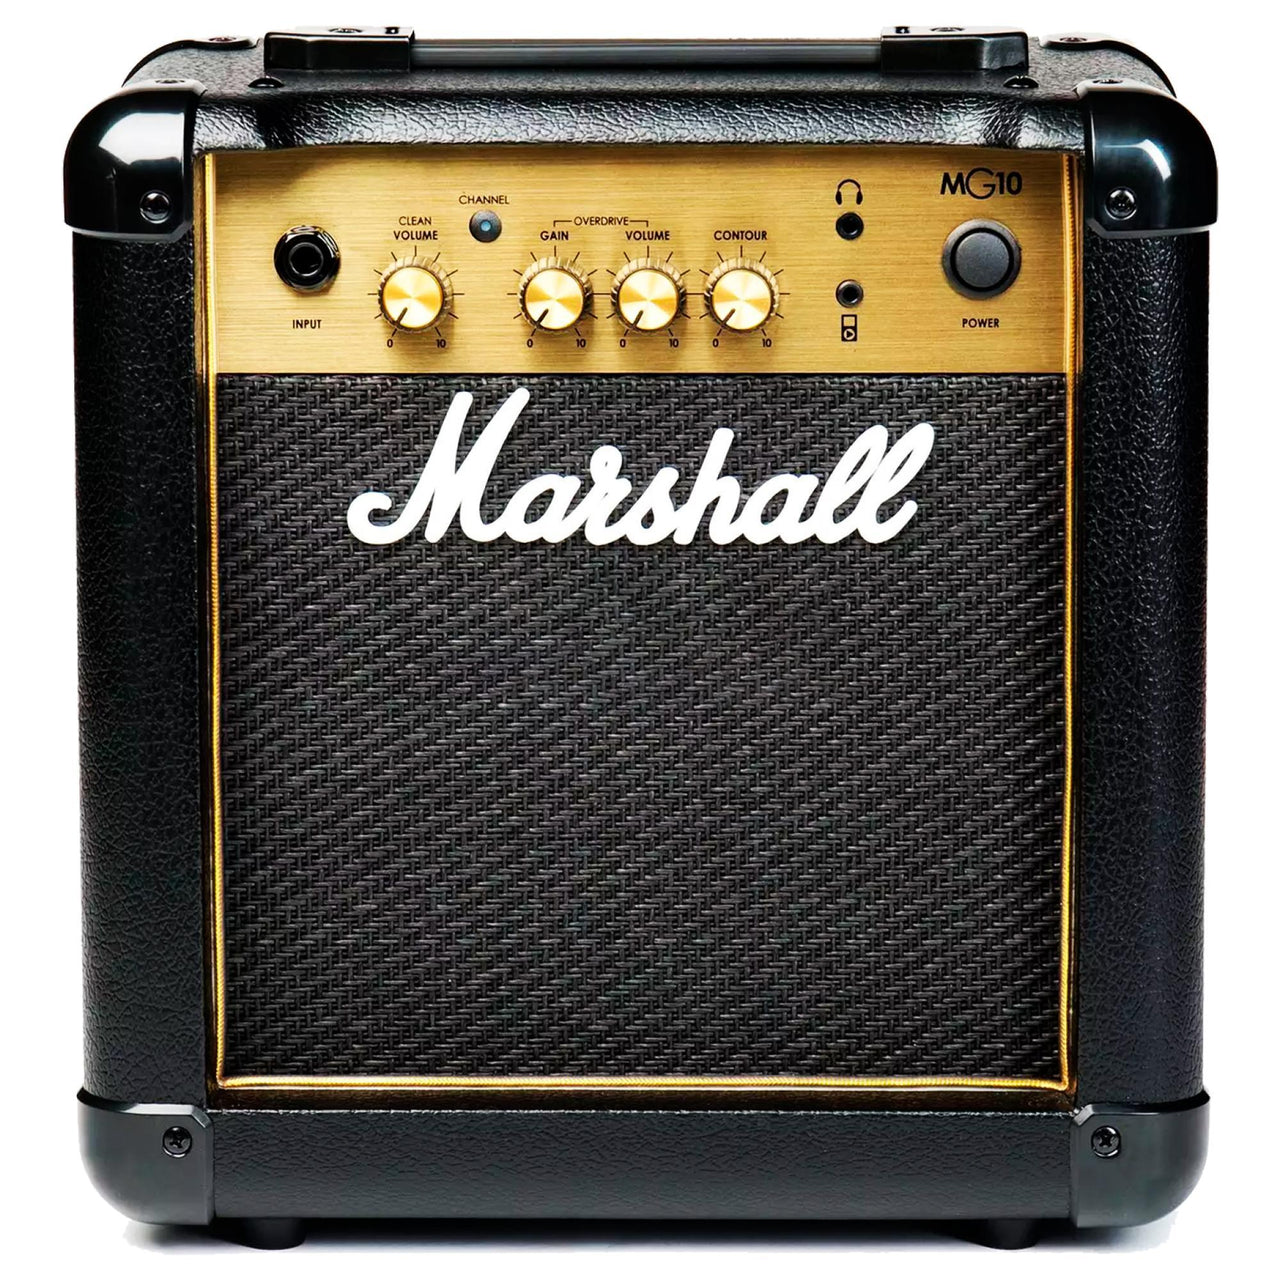 Amplificador Marshall Mg10g Para Guitarra 10 Watts Mg Gold